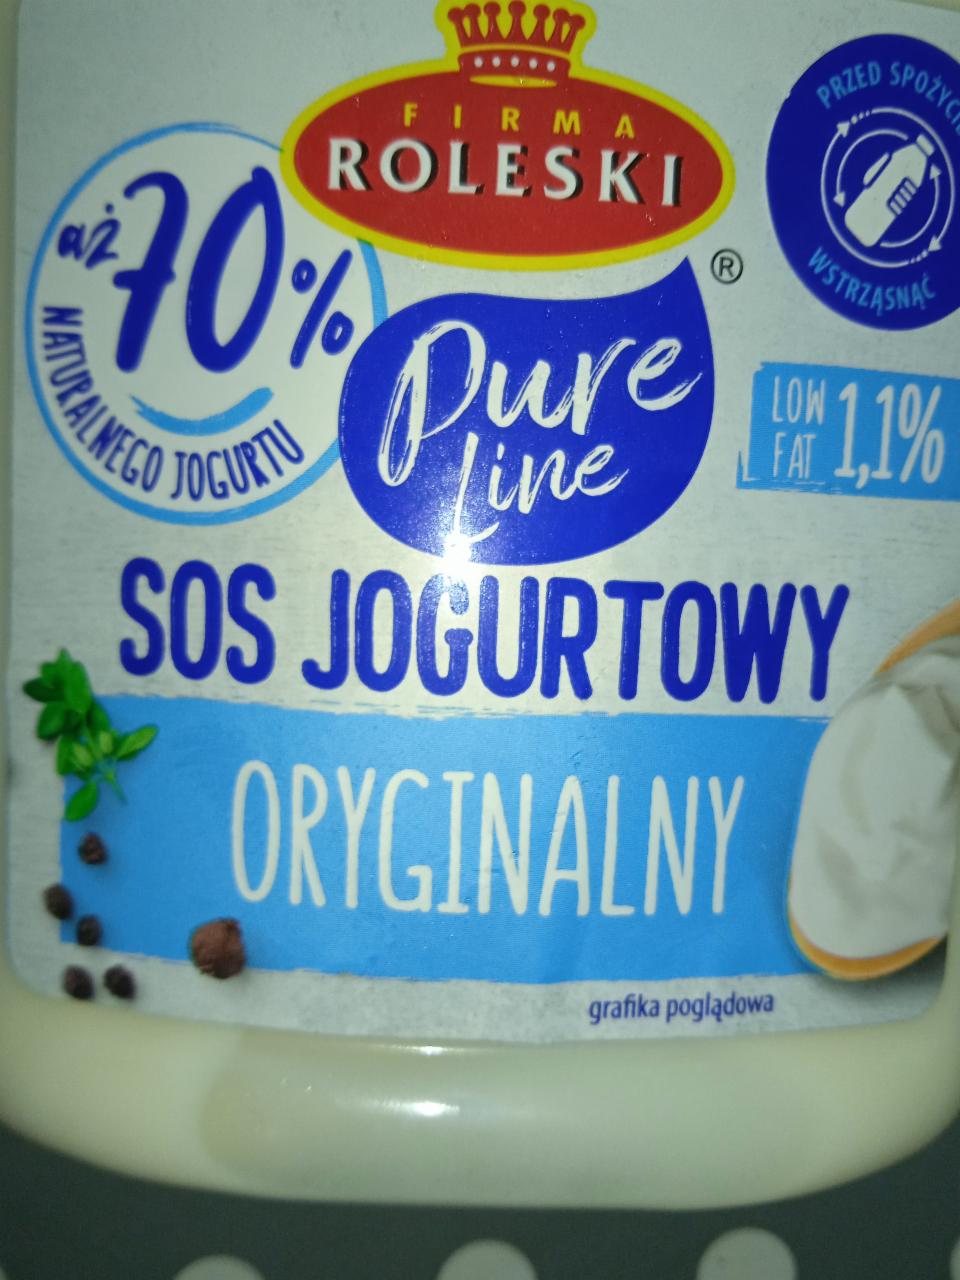 Фото - Sos jogurtowy originalny Firma Roleski